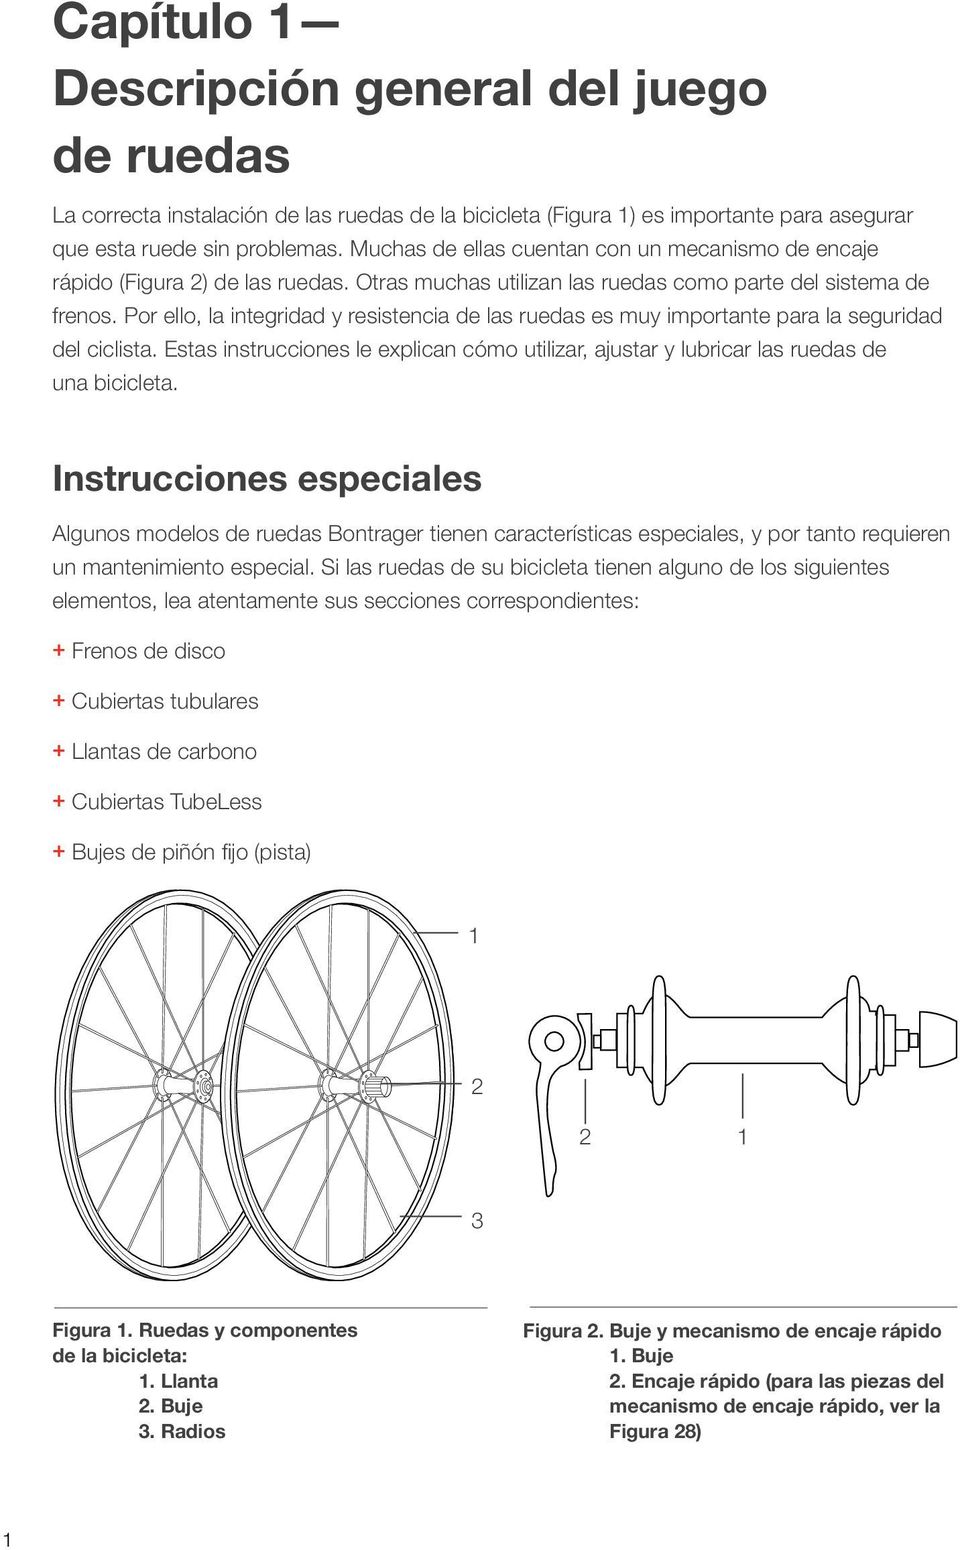 Por ello, la integridad y resistencia de las ruedas es muy importante para la seguridad del ciclista. Estas instrucciones le explican cómo utilizar, ajustar y lubricar las ruedas de una bicicleta.